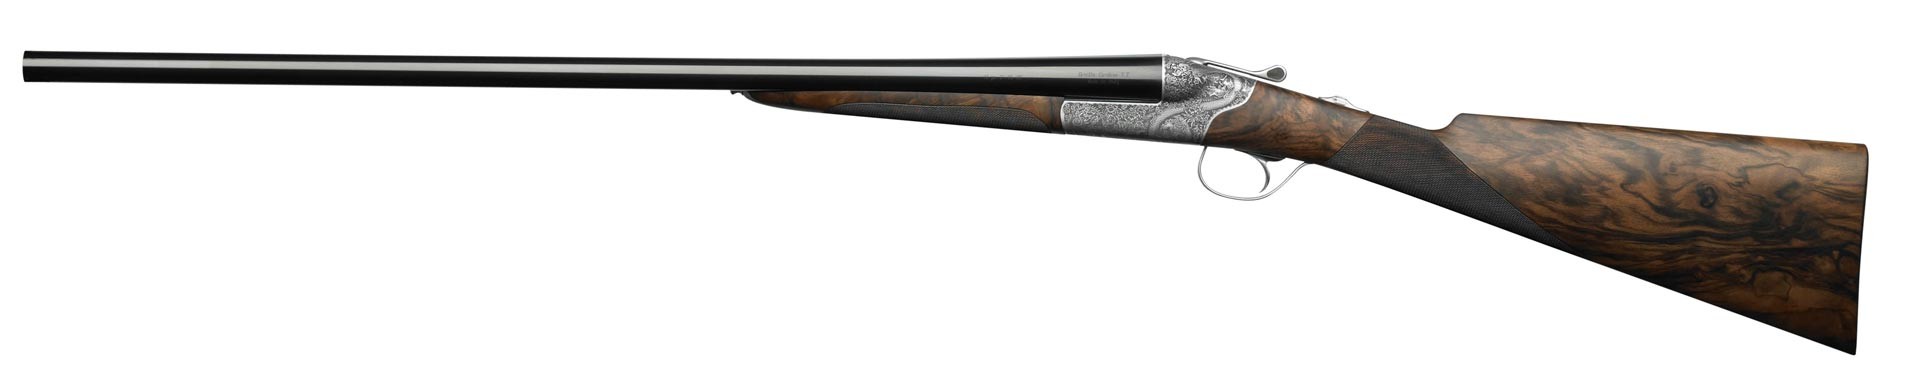 Beretta 486 by marc newson